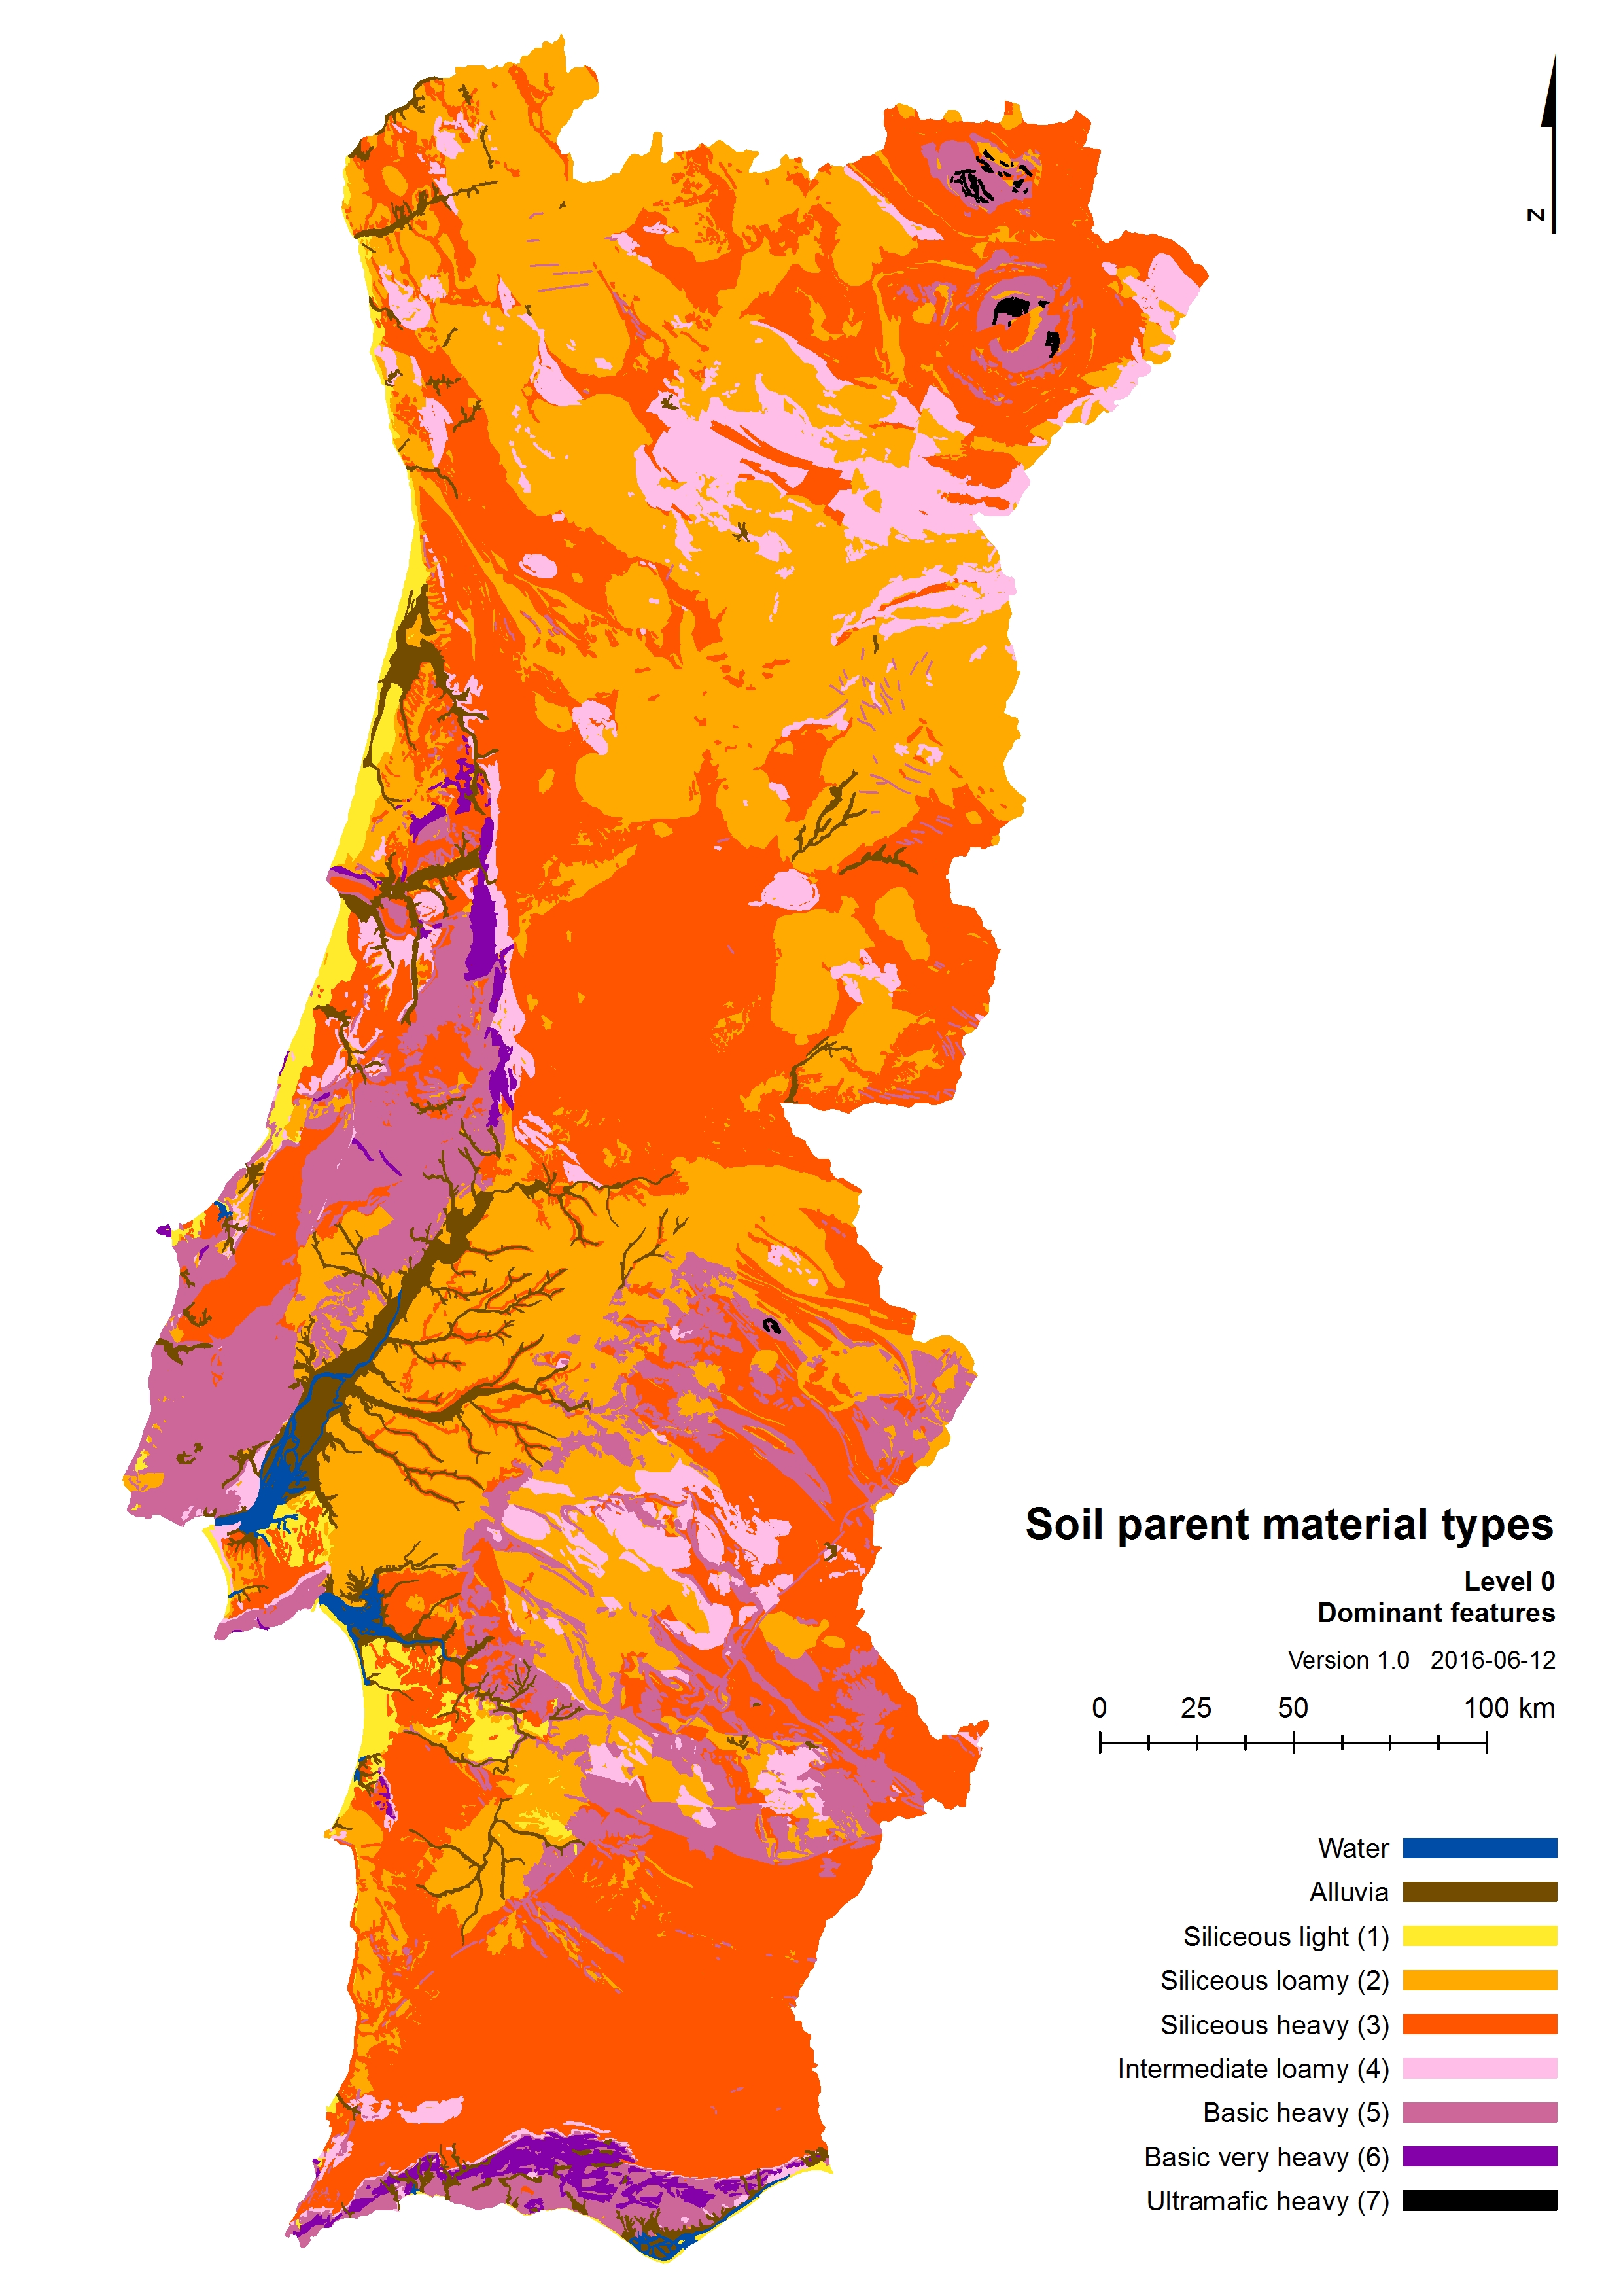 Shapefiles e dados GIS de Portugal